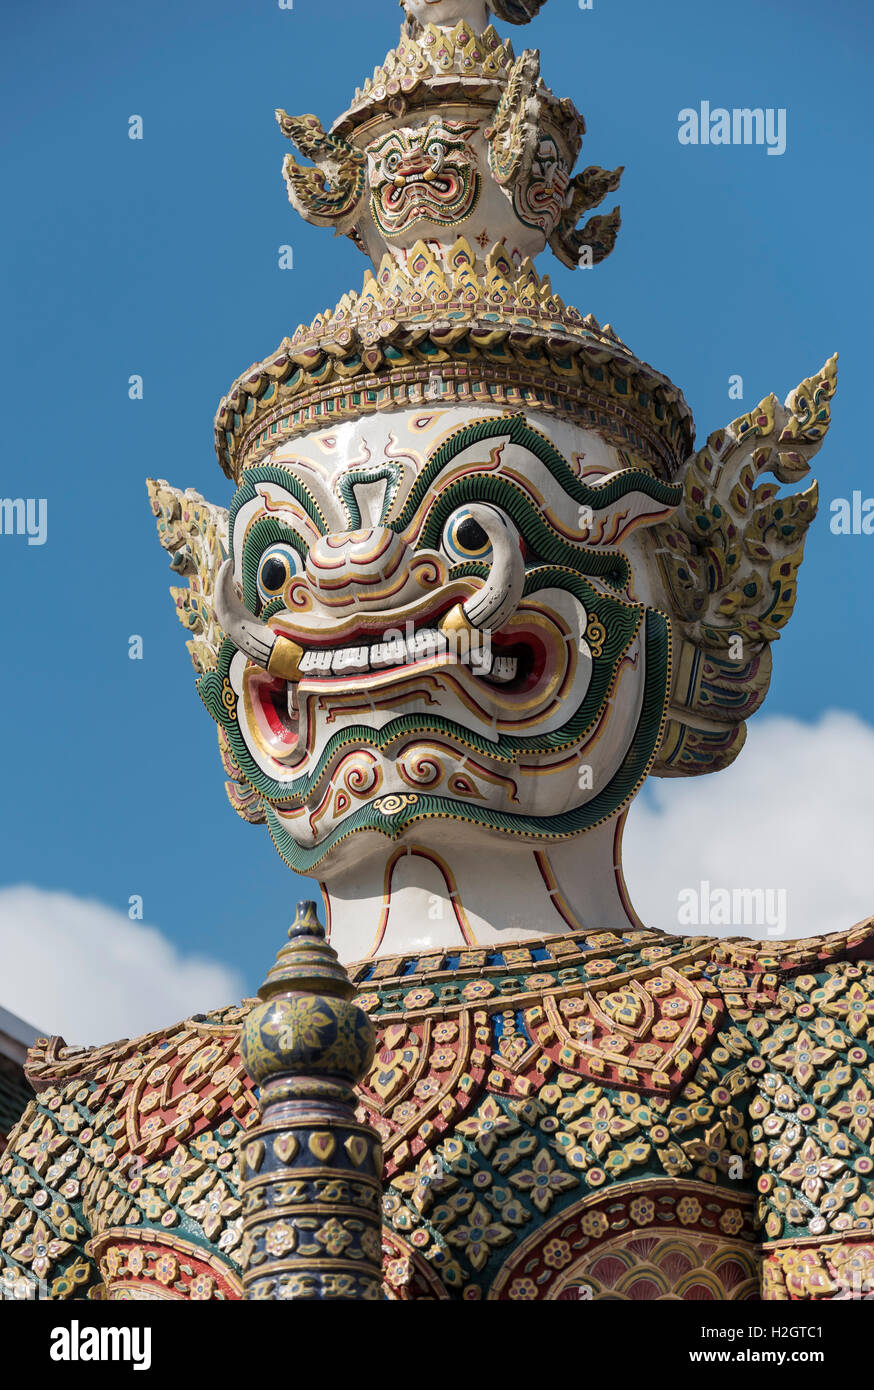 Statue de démon géant Yaksha portes gardiennage, Grand Palace, Bangkok, Thaïlande Banque D'Images